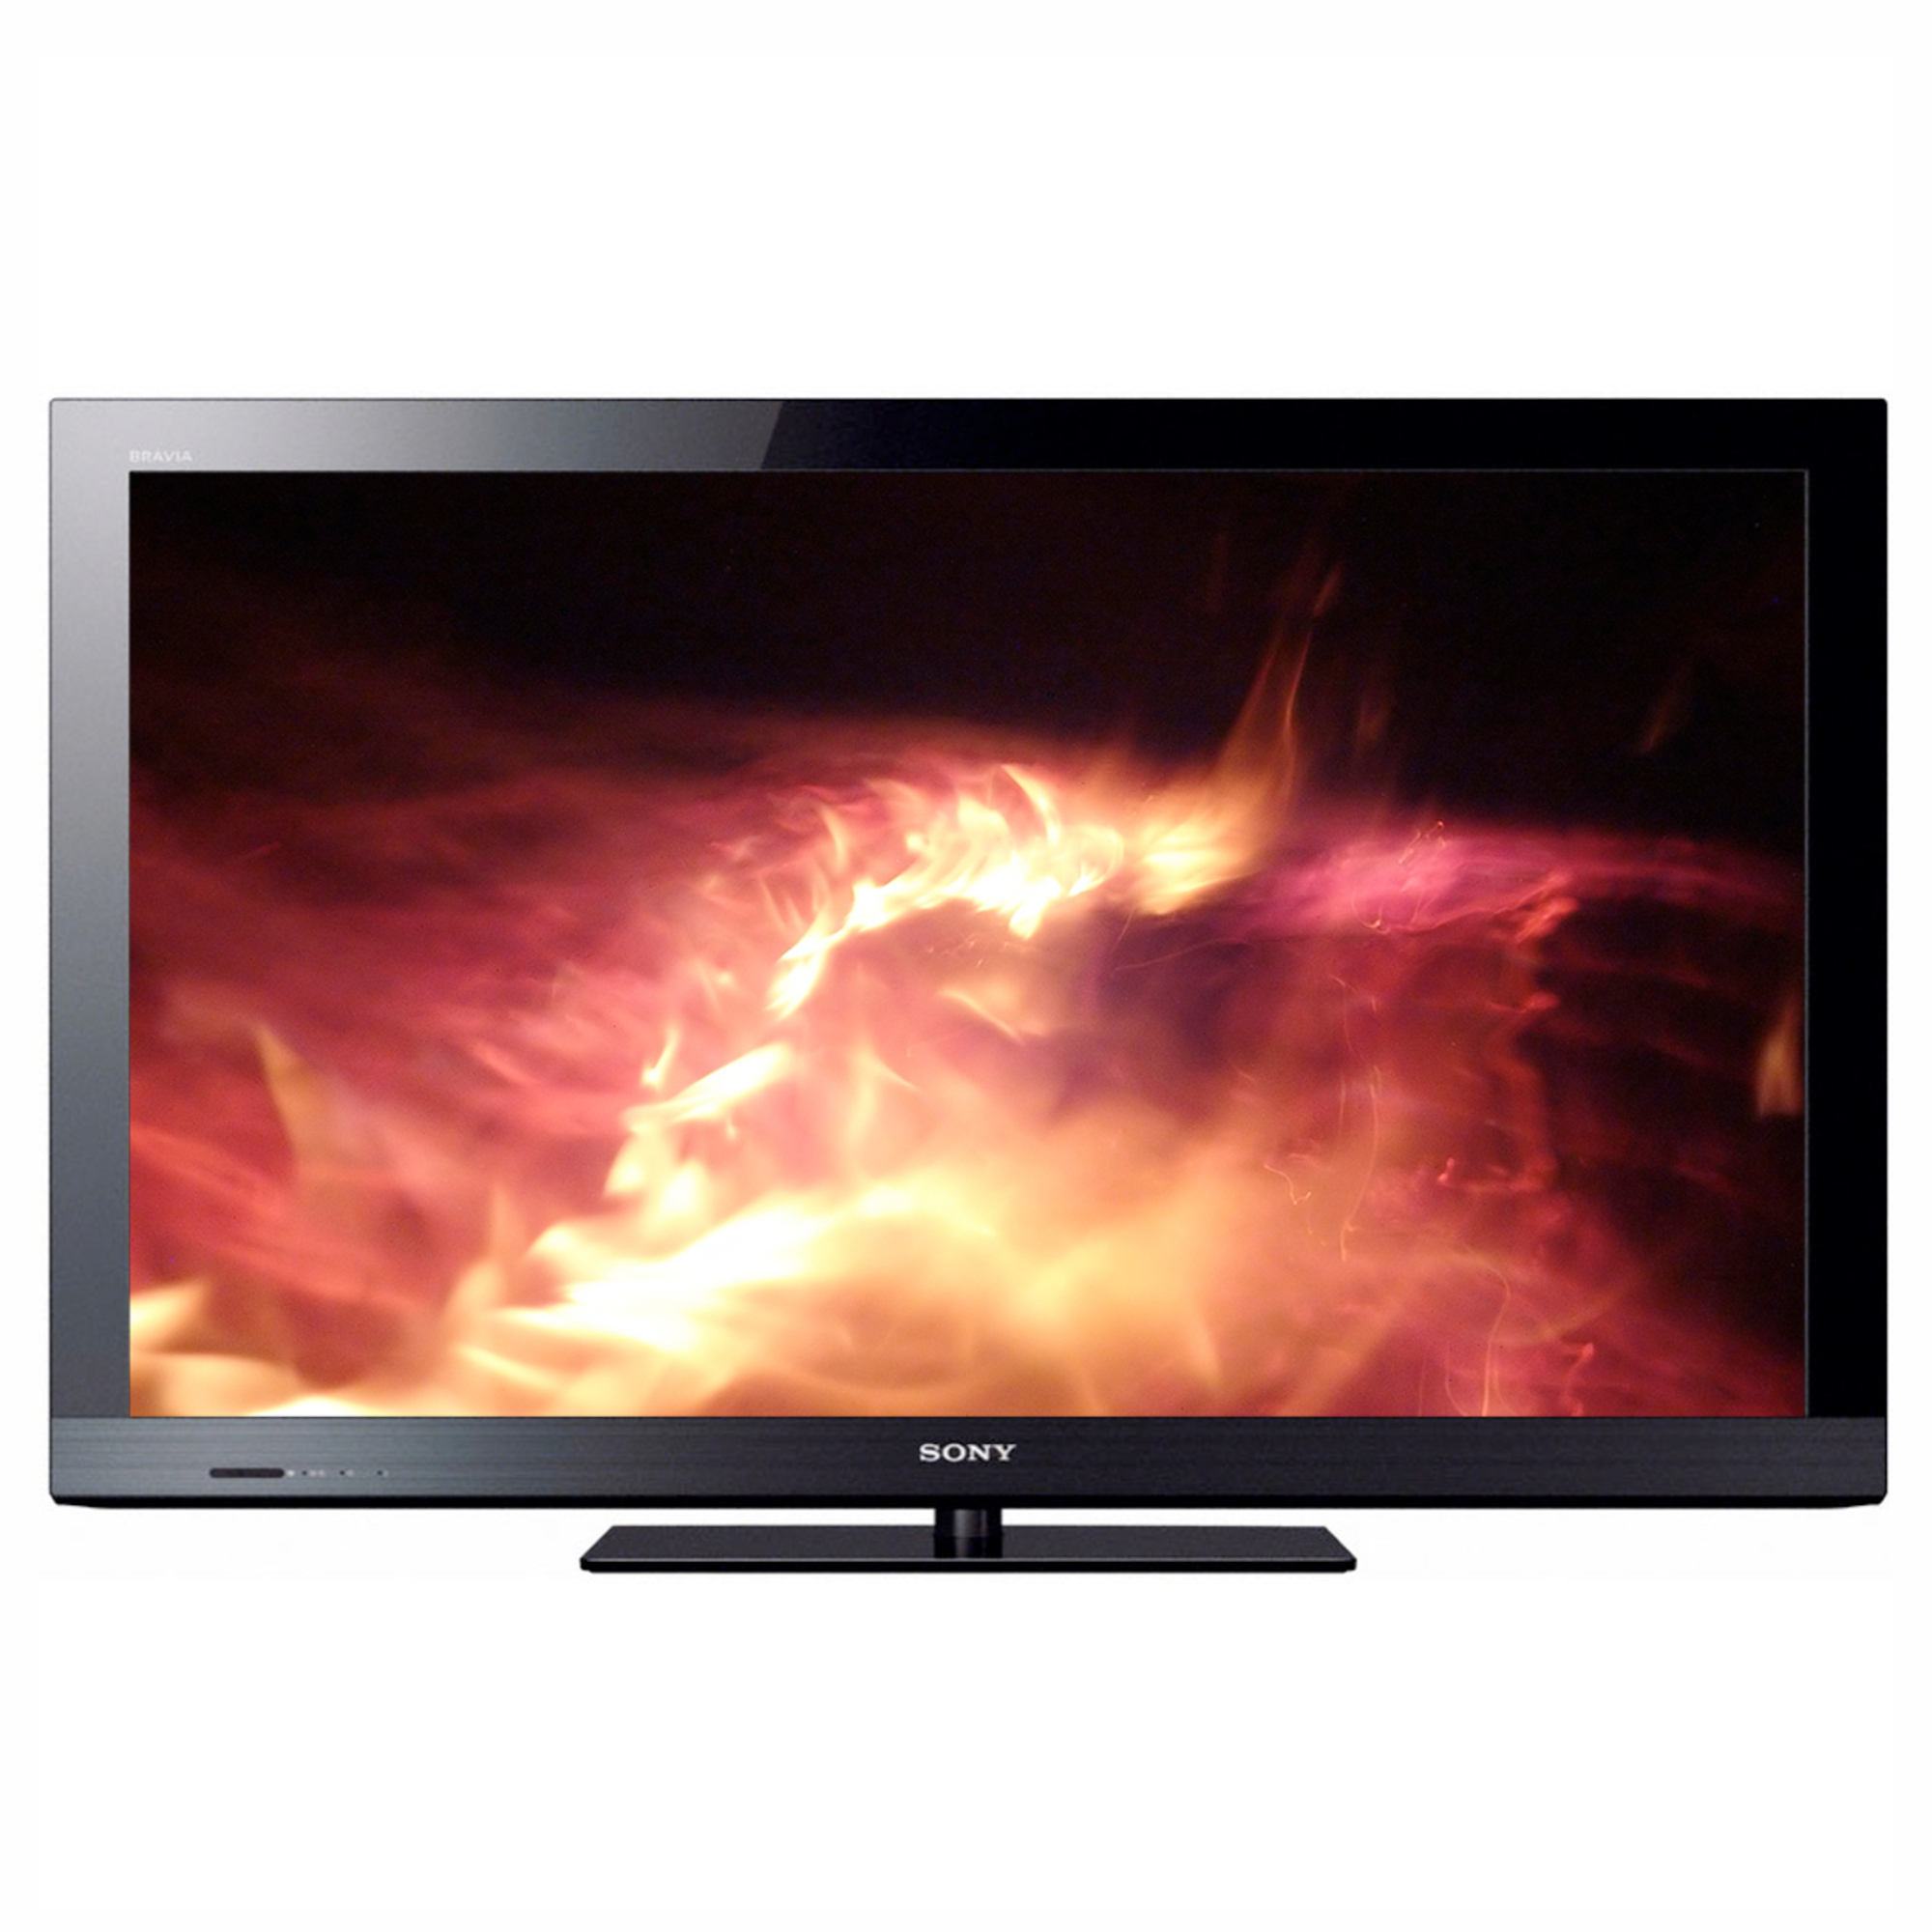 TV La Maison de Valerie - Téléviseur LED 102 cm Sony KDL40EX525 prix 599,00 euros